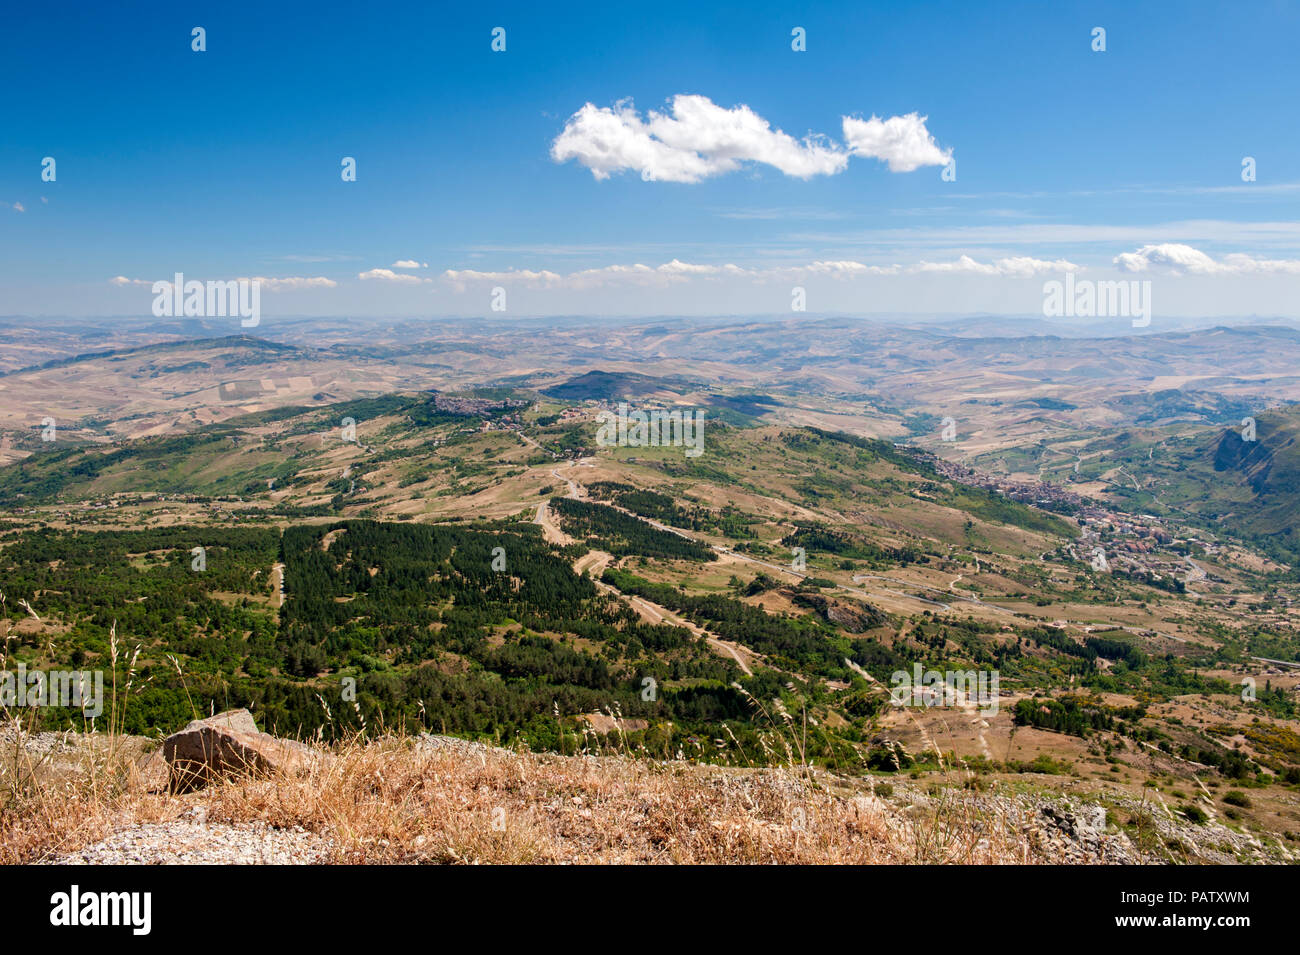 La vista sobre el centro de Sicilia desde el Parco delle Madonie, una extensa reserva natural de Madonie y el hogar de la cordillera. Foto de stock